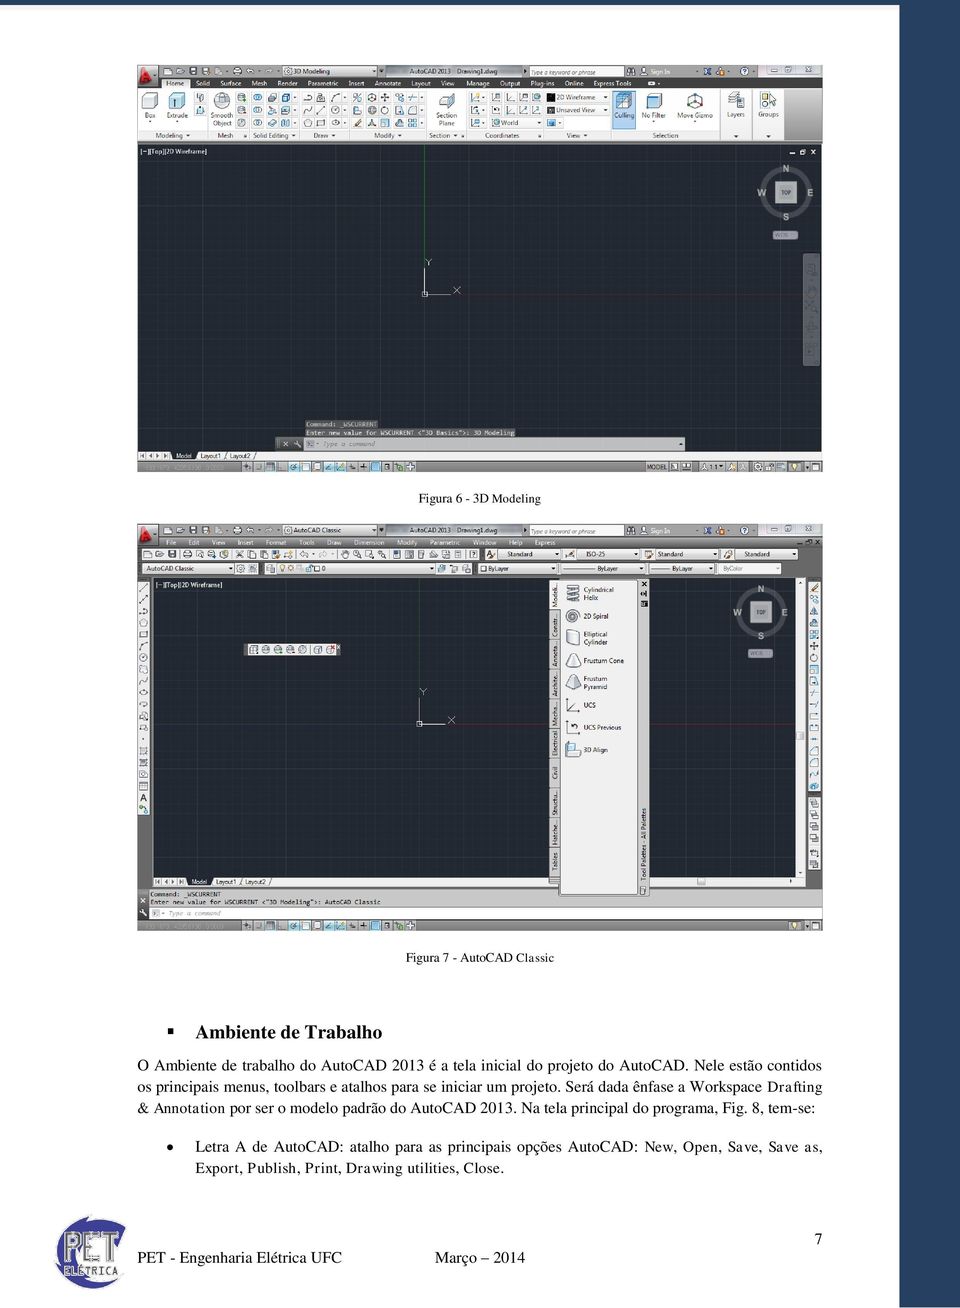 Será dada ênfase a Workspace Drafting & Annotation por ser o modelo padrão do AutoCAD 2013. Na tela principal do programa, Fig.